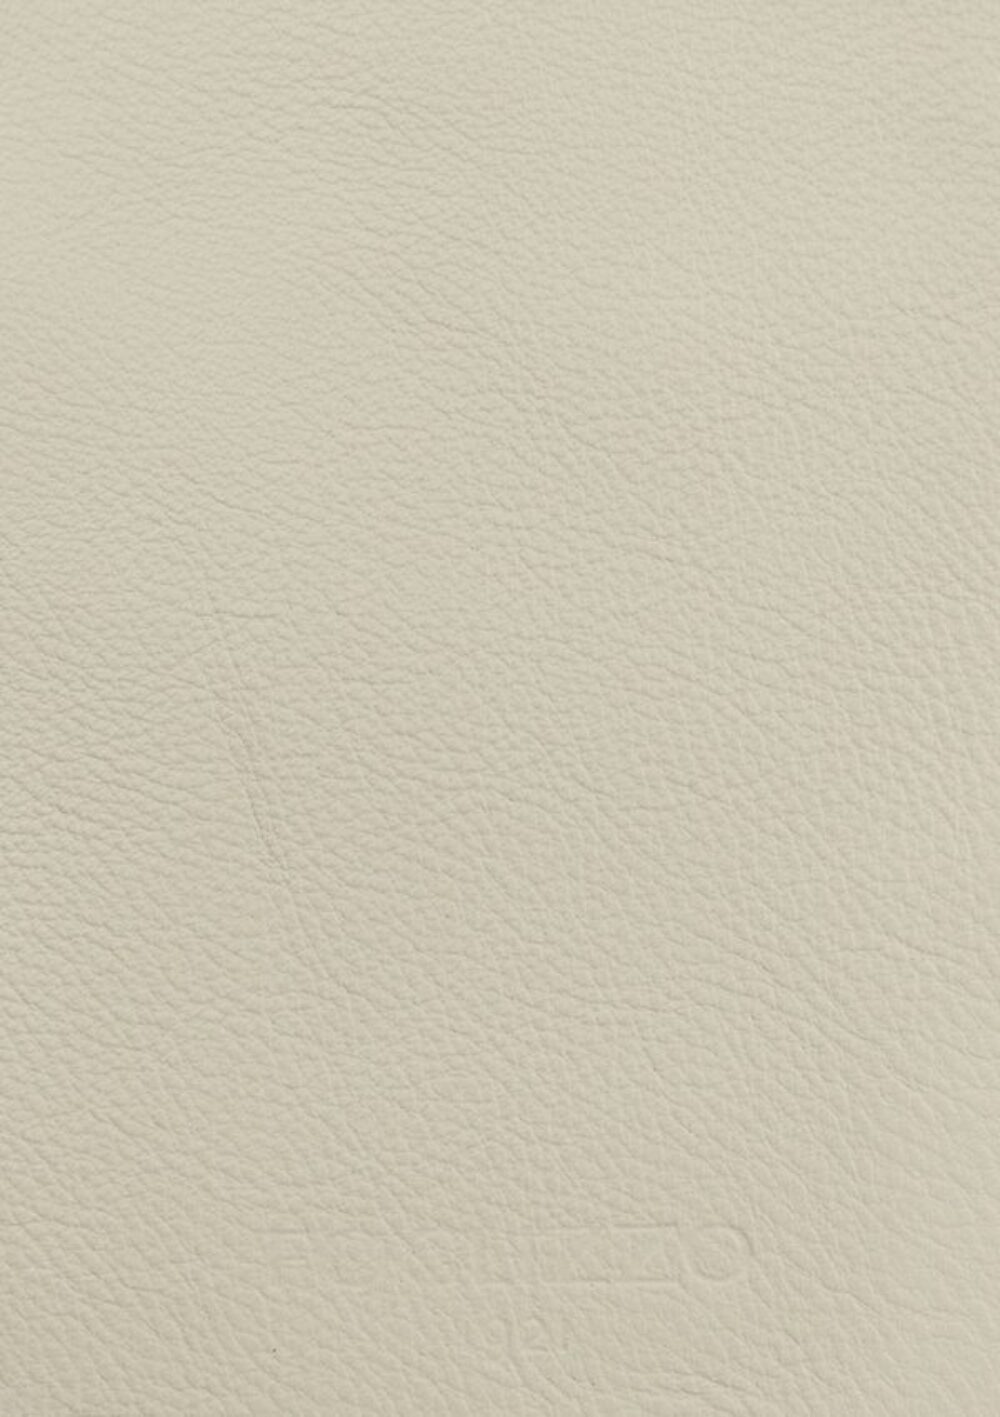 Luxusdesign und hochwertige Teppiche nach Maß • Ivory White Jade